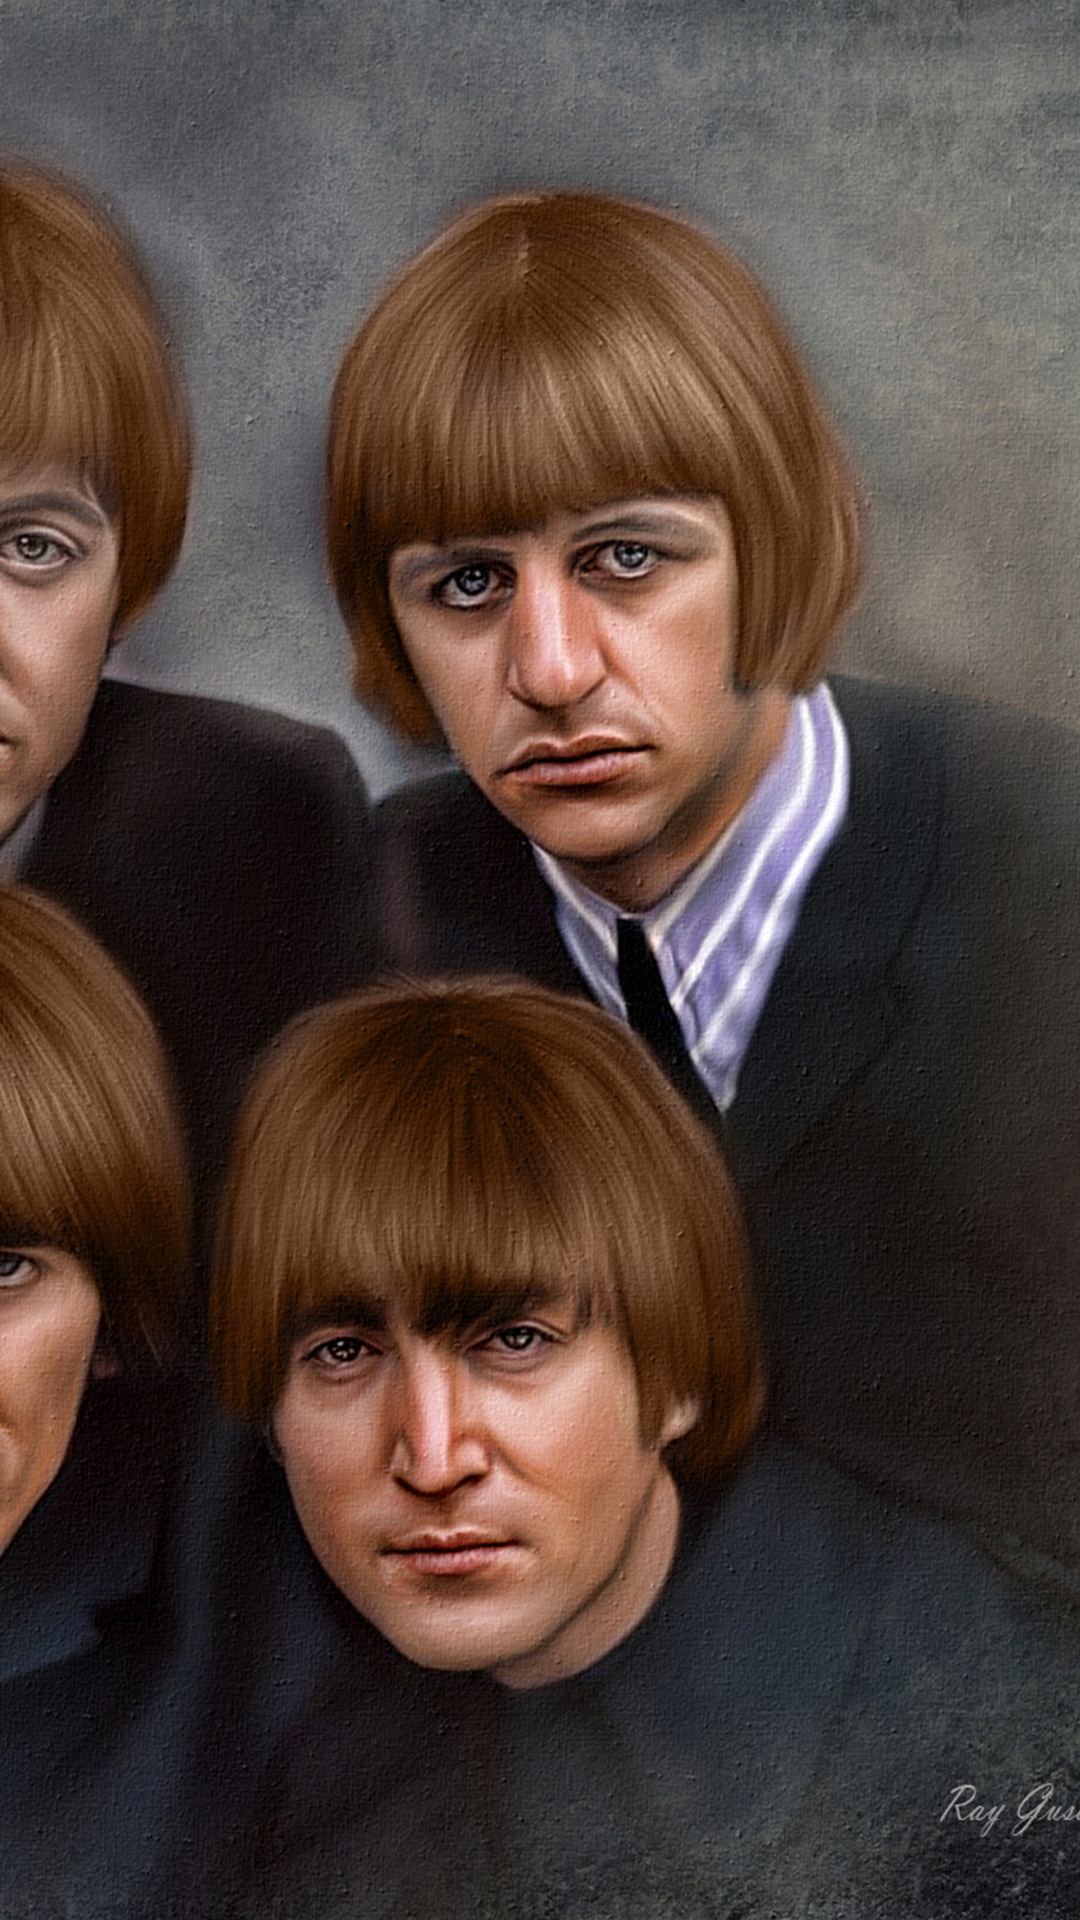 约翰*列侬, 保罗*麦卡特尼, 乔治*哈里森, Ringo Starr, 披头士 8x10 壁纸 1080x1920 允许